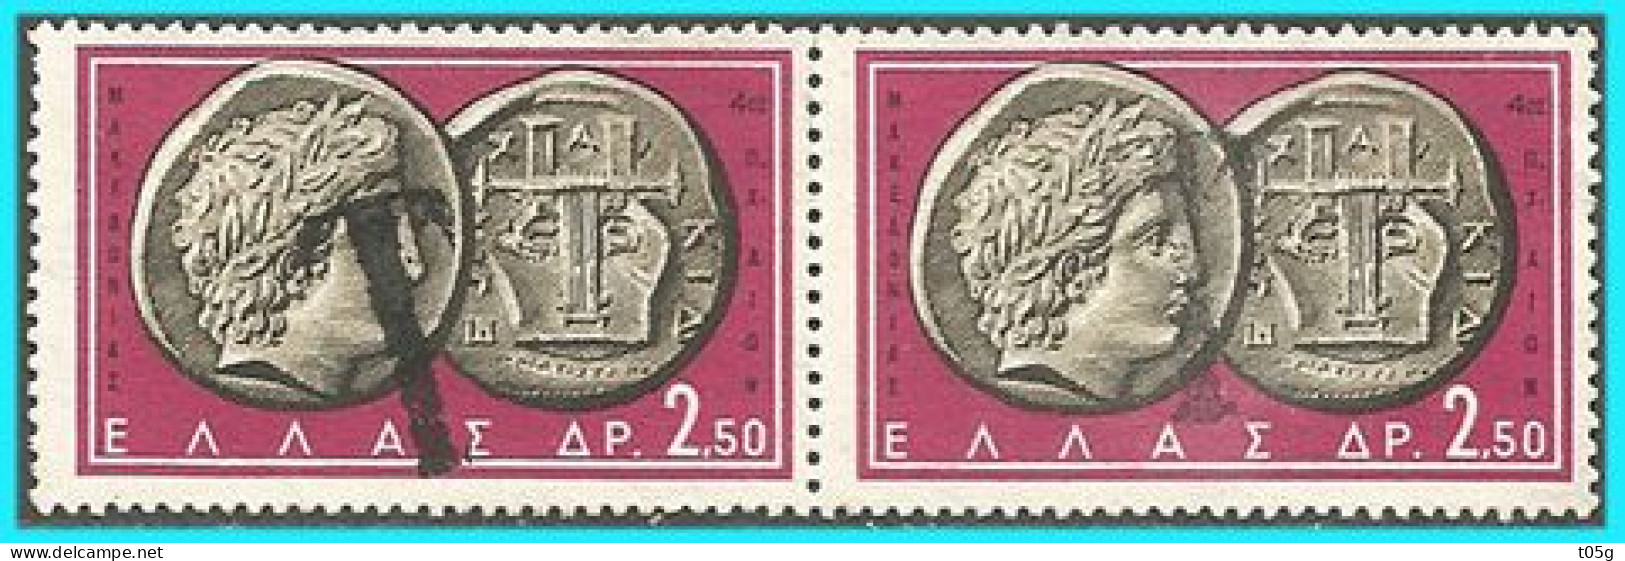 GREECE- GRECE- HELLAS 1959: Canc (T= ΕΙΣΠΡΑΚΤΕΟΝ ΤΕΛΟΣ)   on  2,50drx  "Ancient Greek Coins  A"  Used - Gebraucht